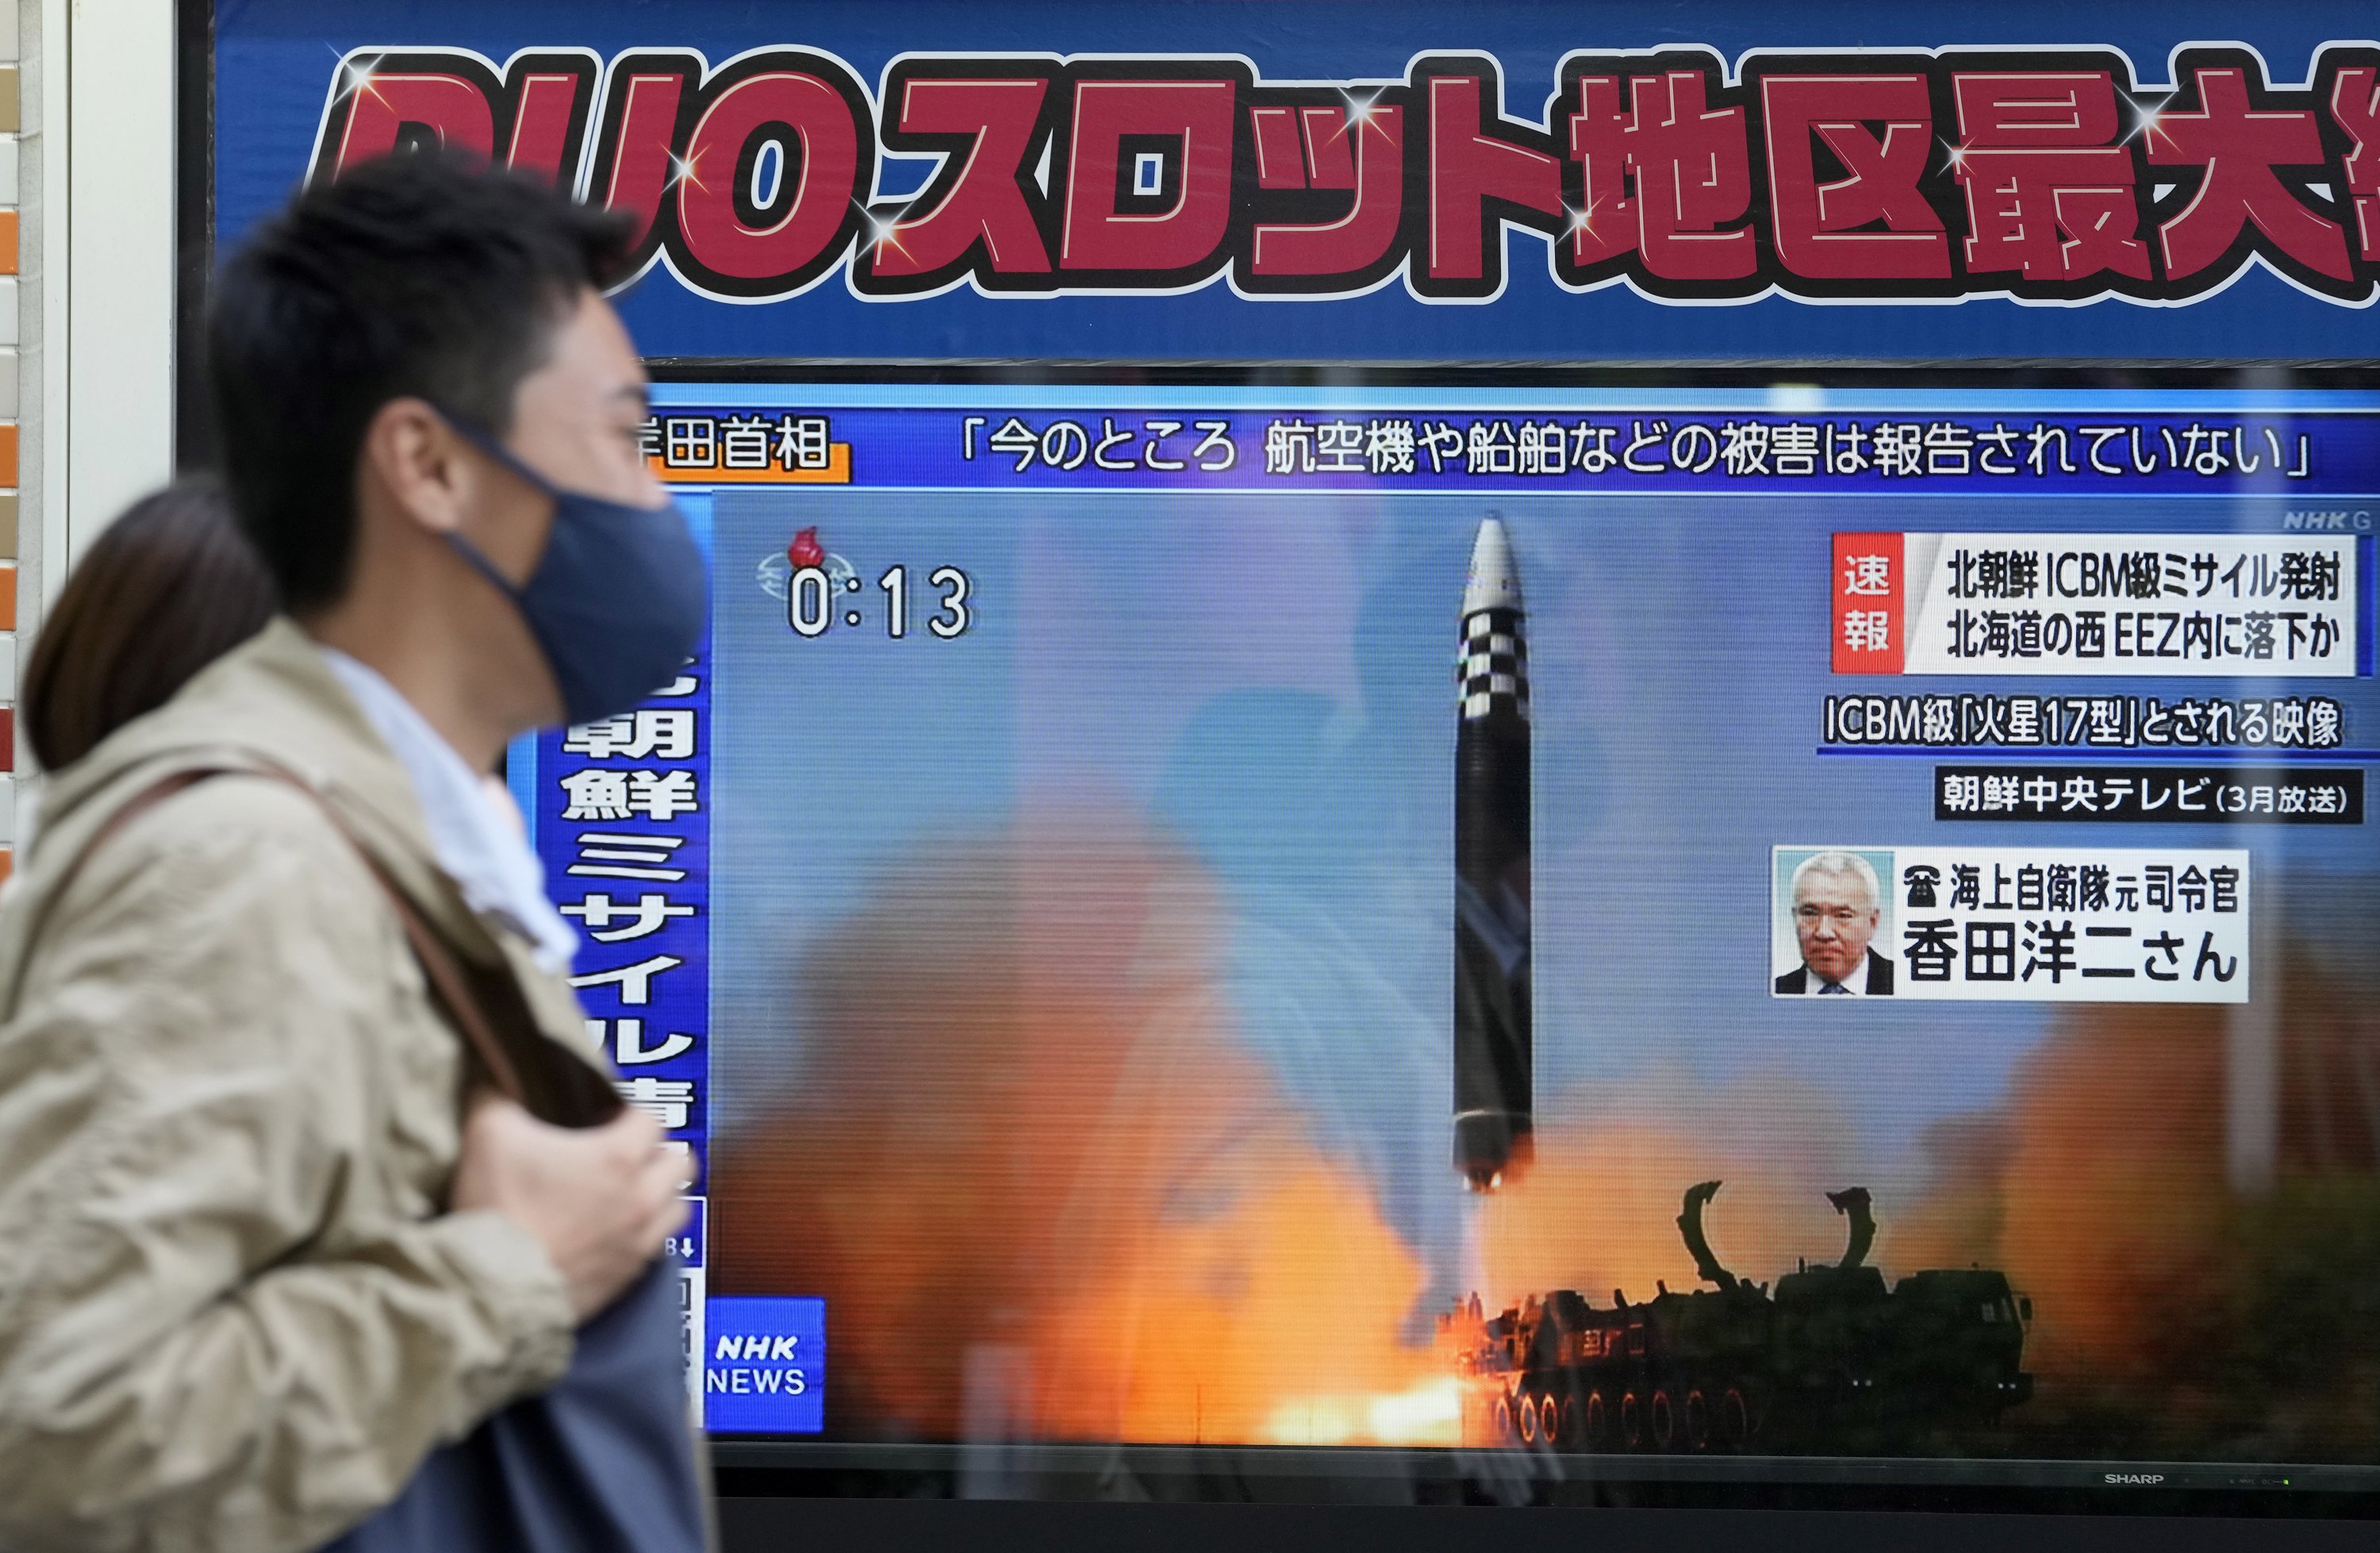 Nuevo ataque de Corea del Norte: Pyongyang dispara un misil en aguas japonesas